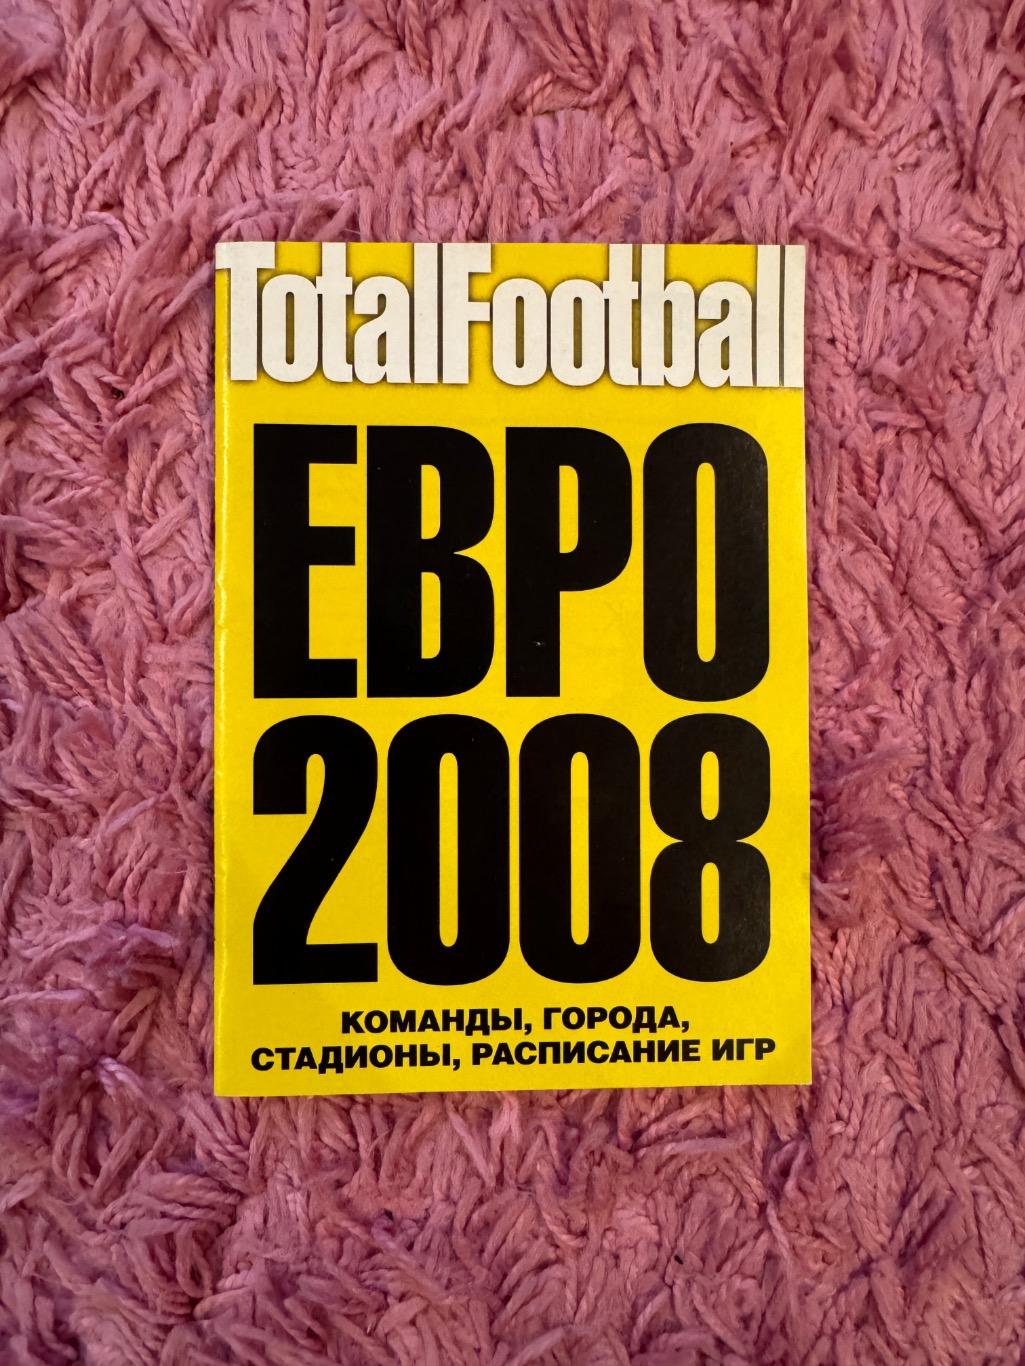 Евро 2008 футбол мини журнал